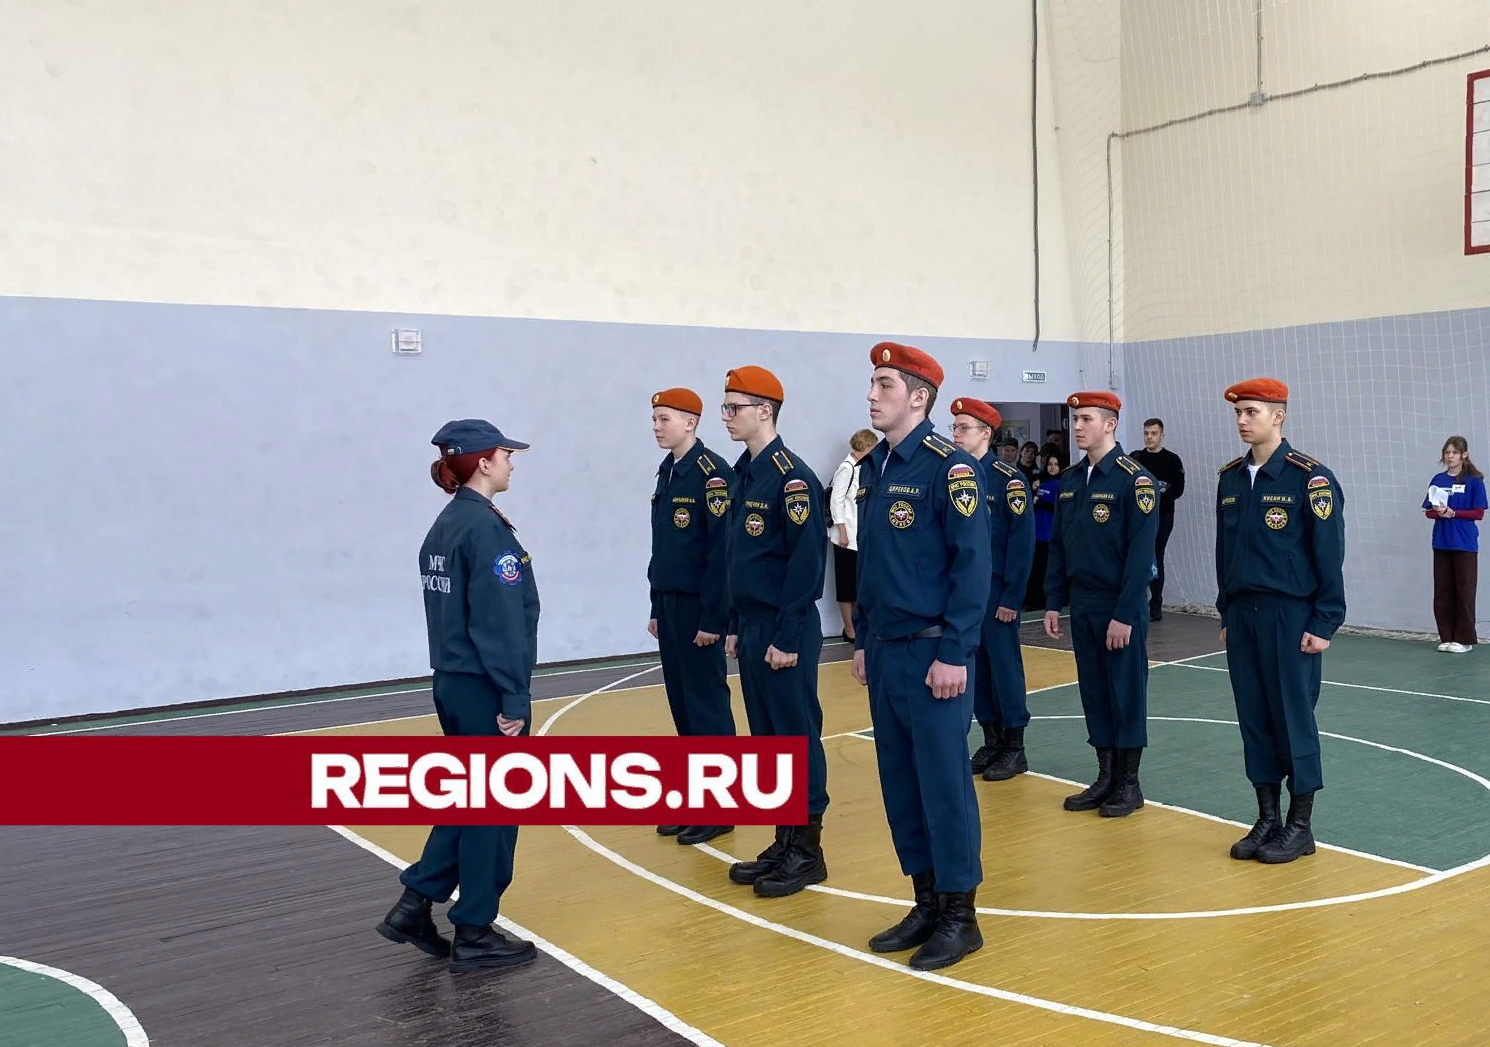 Военный парад собрал несколько десятков студентов в Орехово-Зуеве